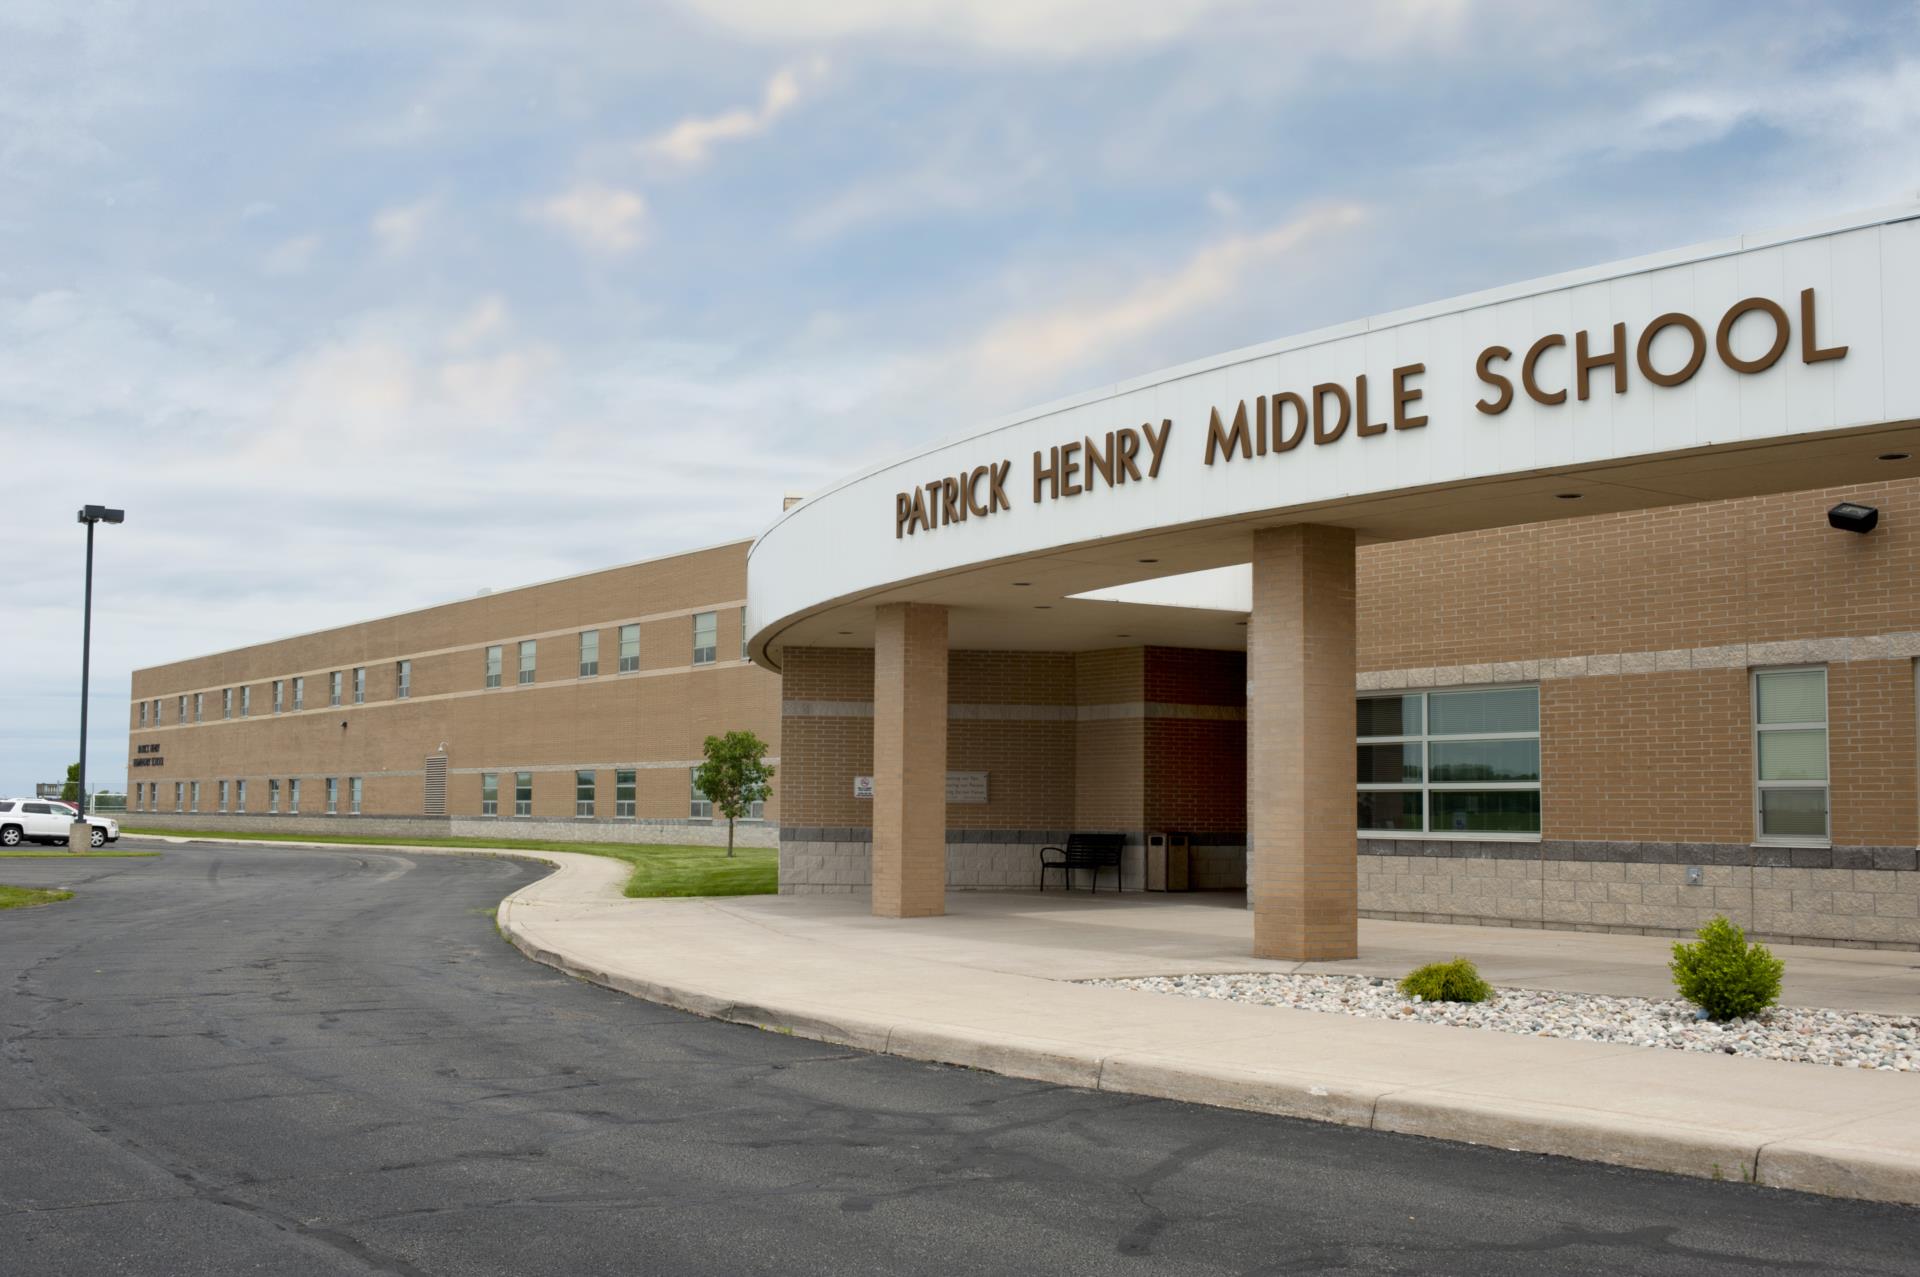 Patrick Henry Middle School Entrance